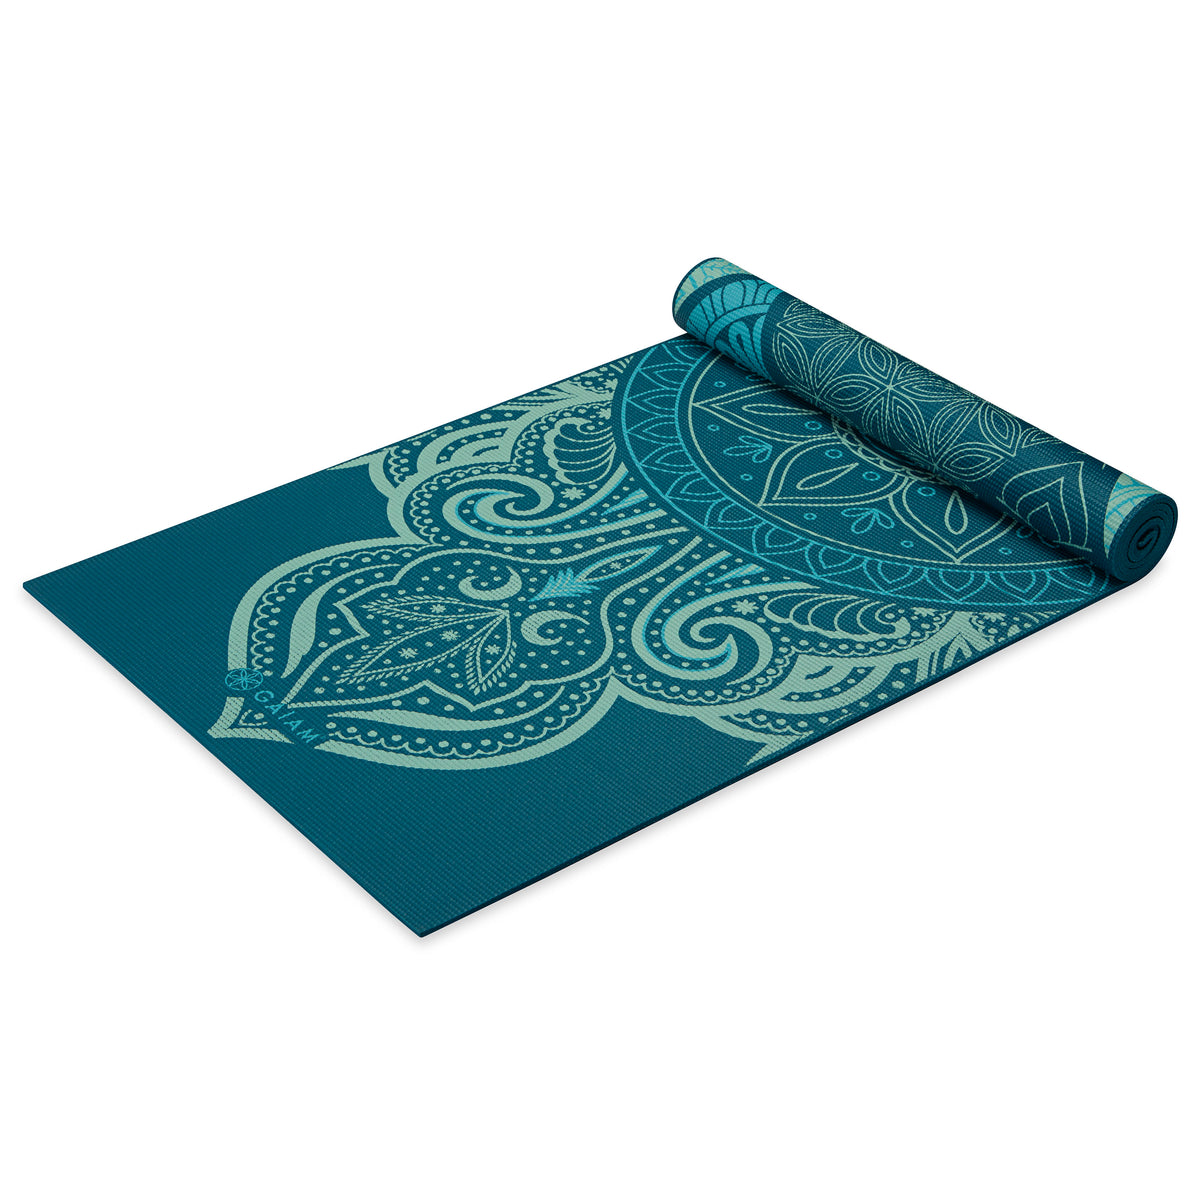 Buy Gaiam 6mm Premium Reversible Print Yoga Mat Kaleidoscope Sea at